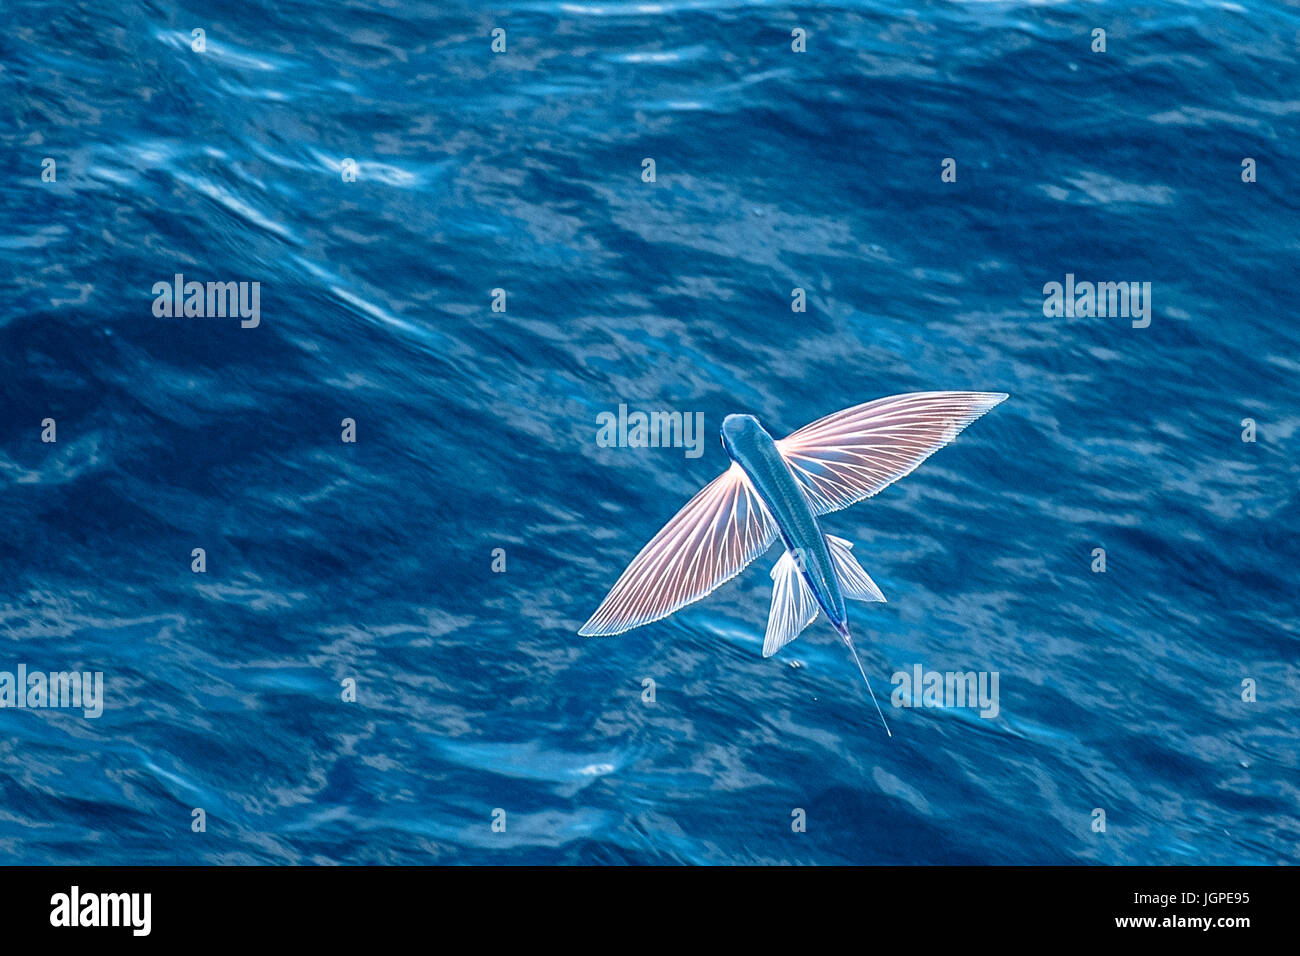 Sailfin peces voladores, Parexocoetus brachypterus, en medio del aire, varios cientos de millas de Mauritania, el Norte de África, Océano Atlántico Norte Foto de stock